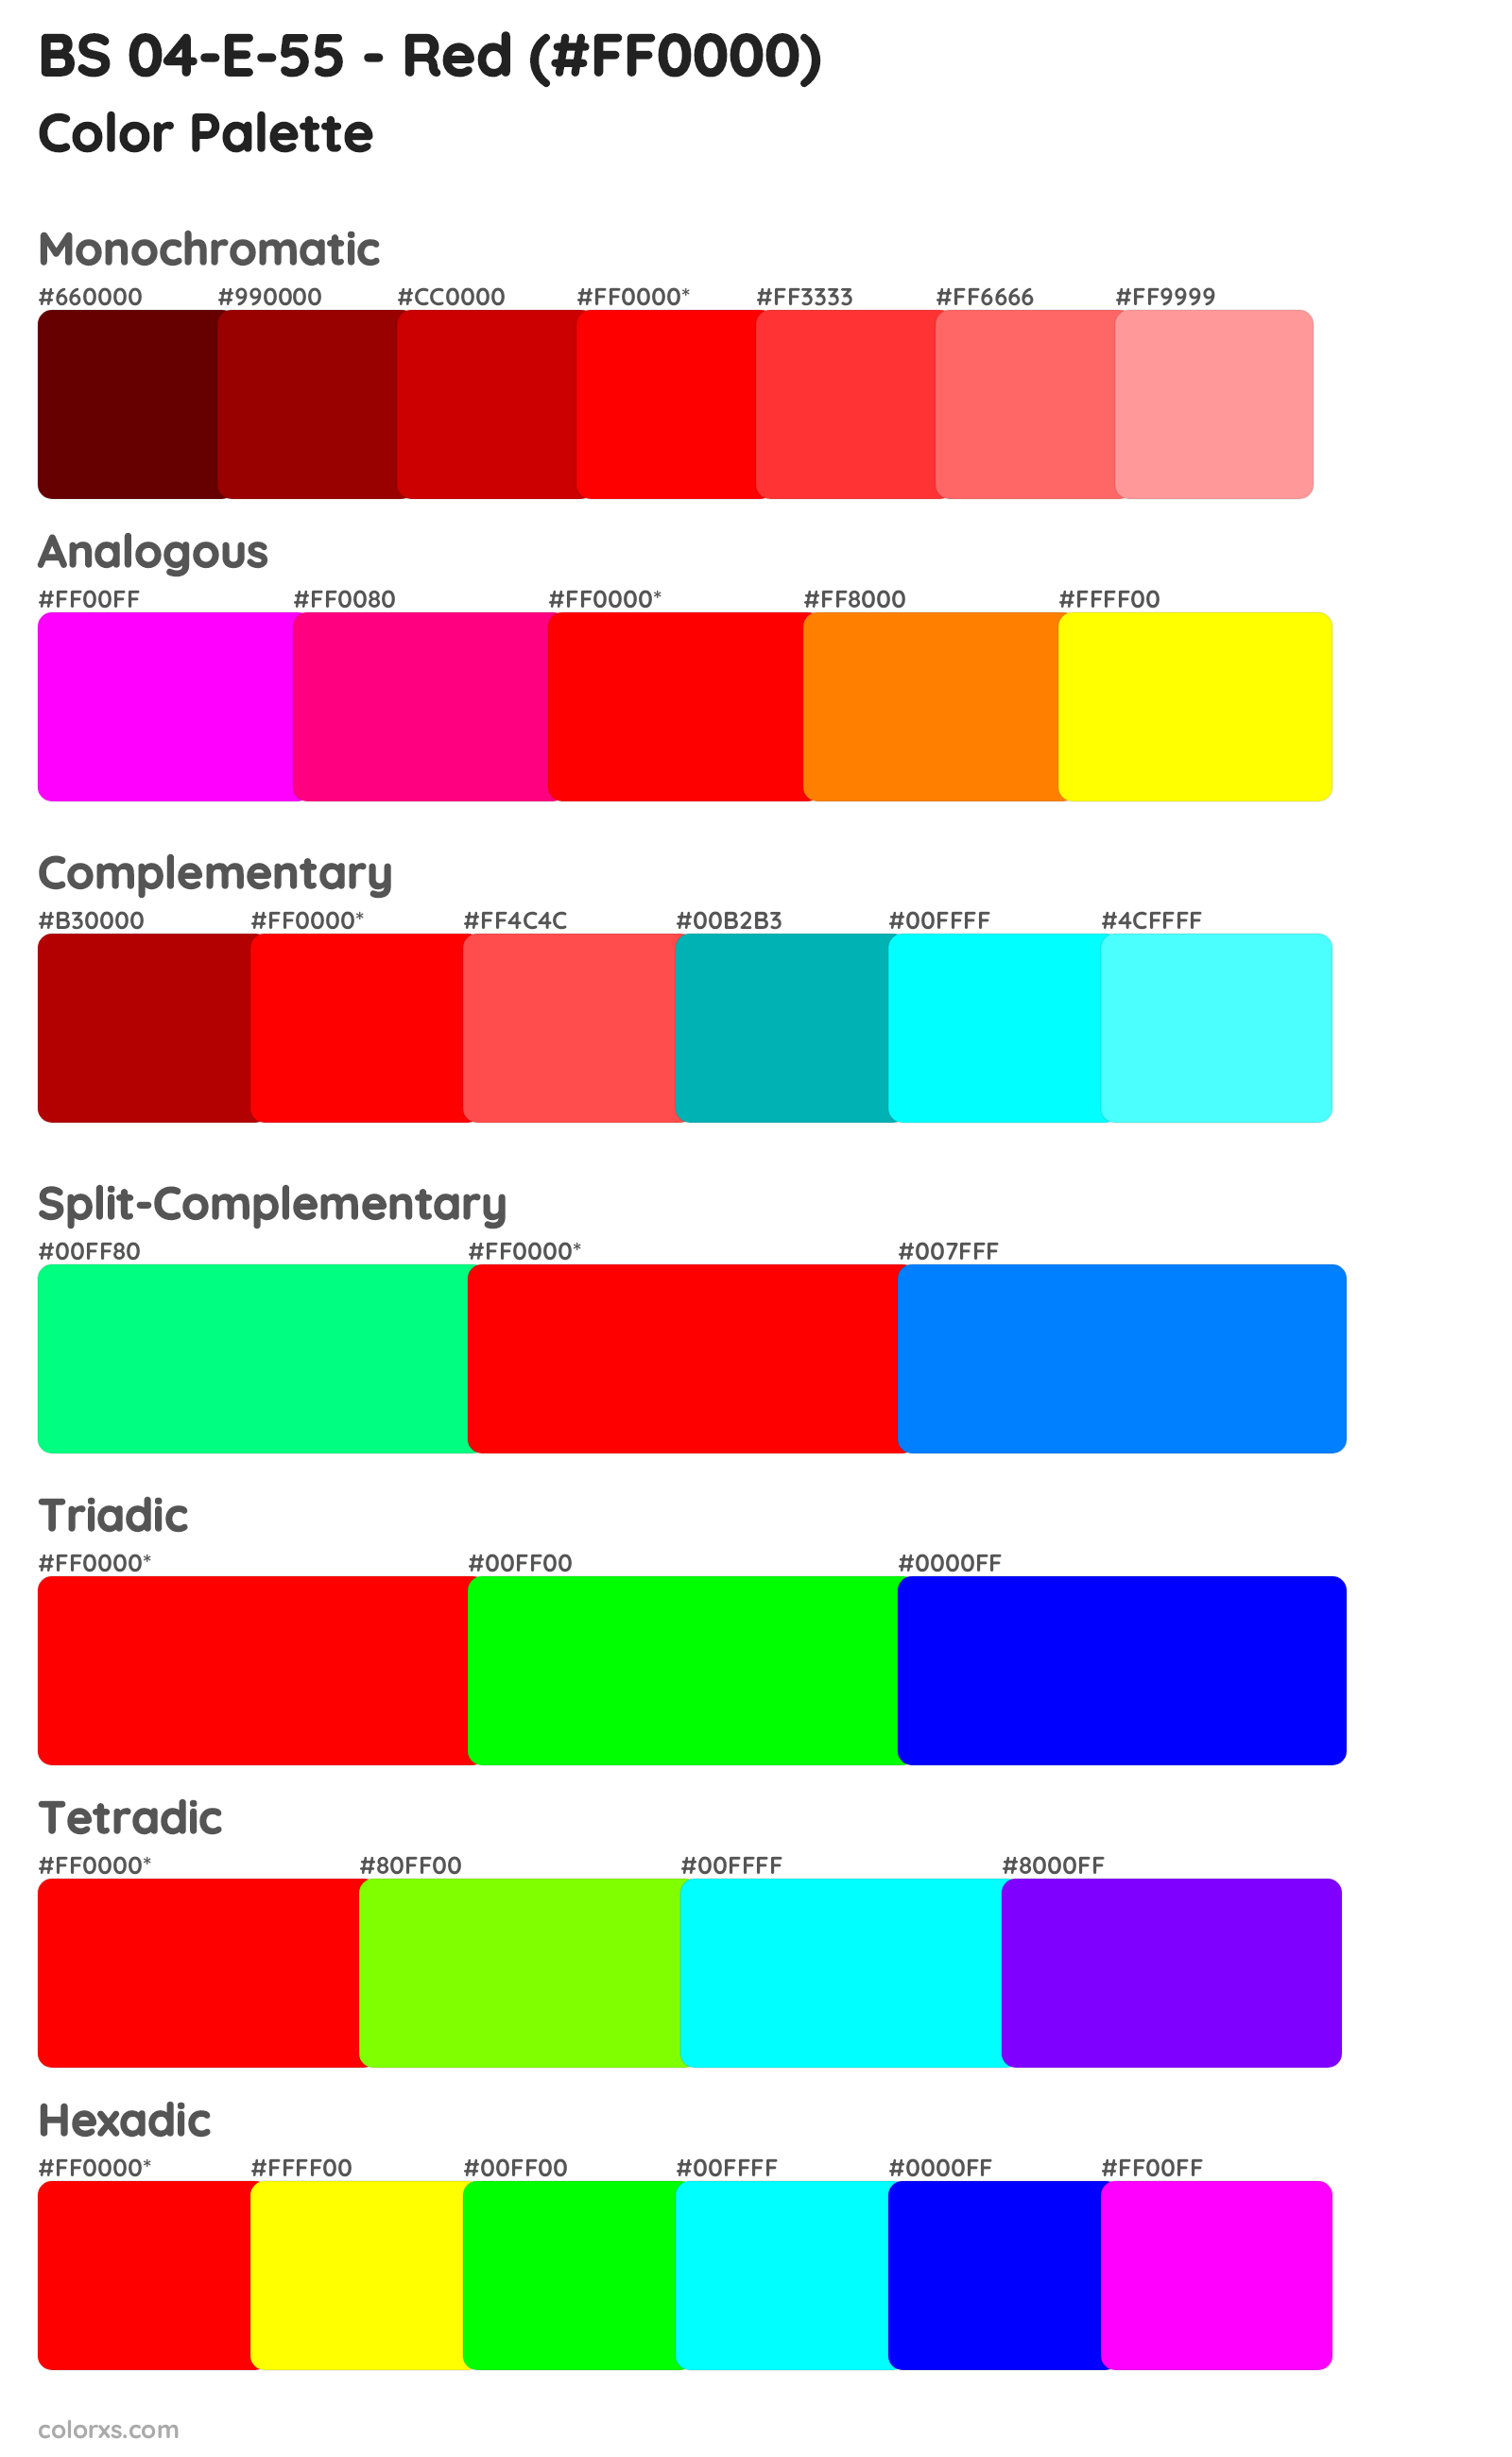 BS 04-E-55 - Red Color Scheme Palettes